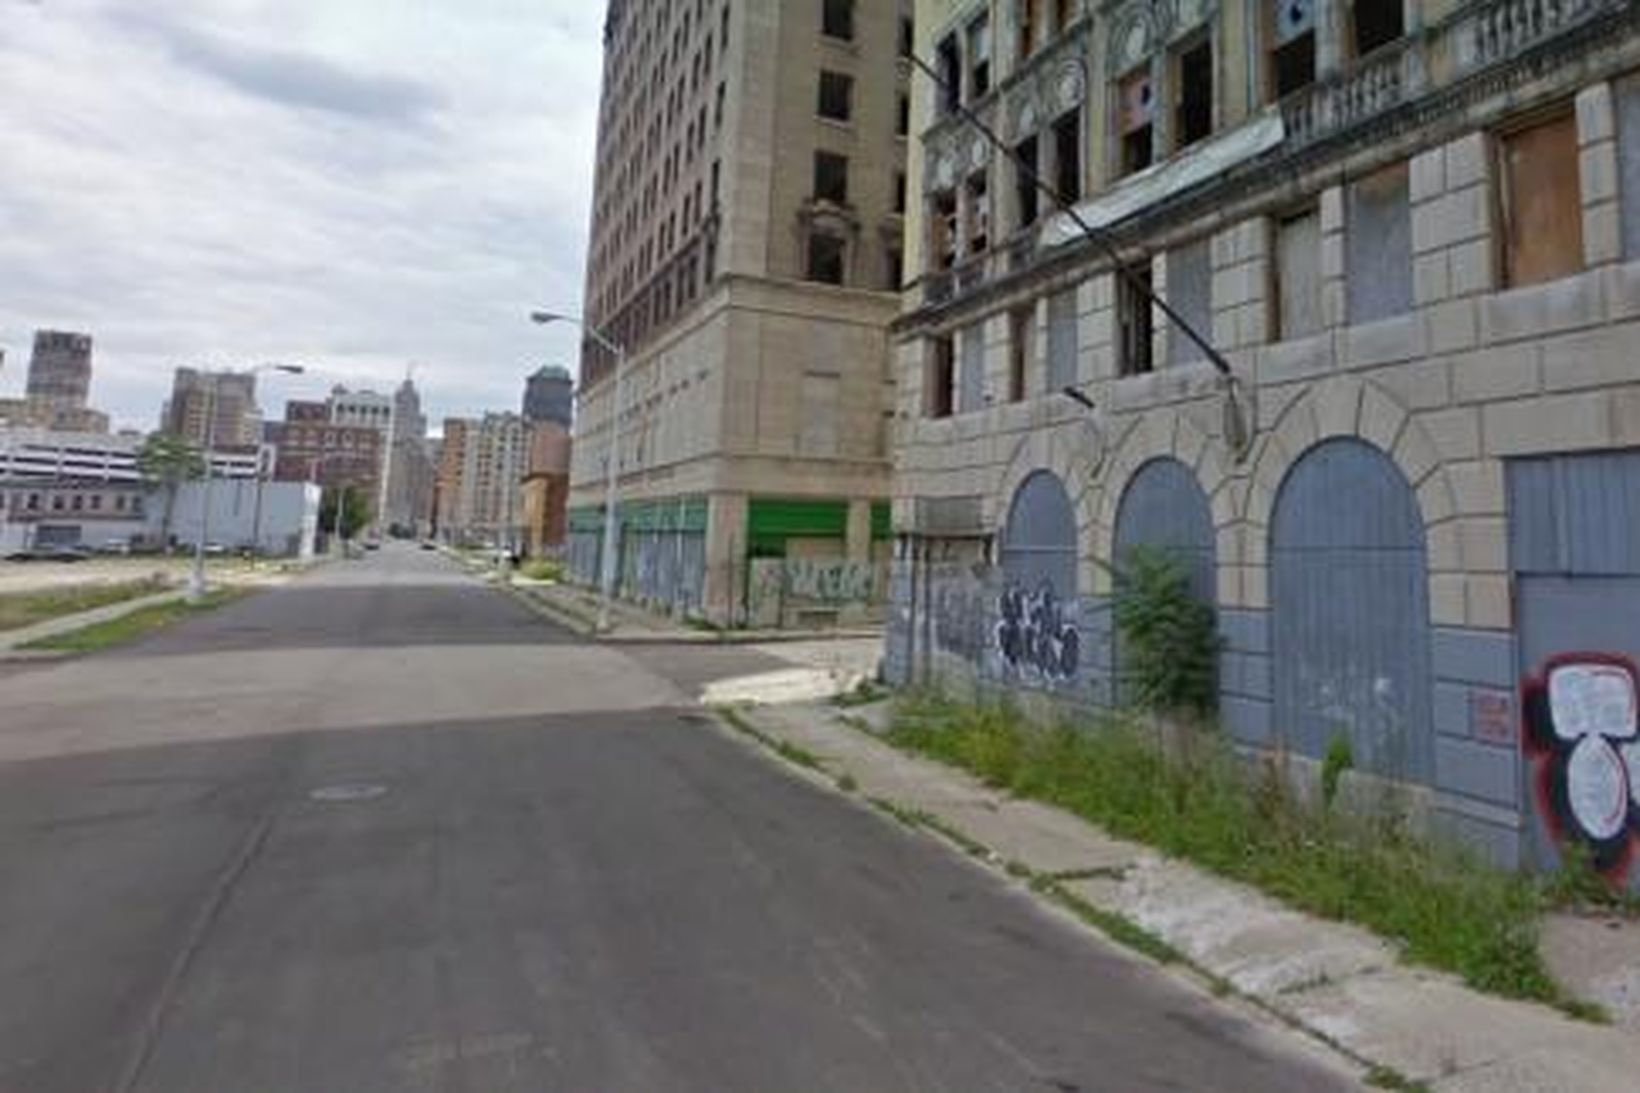 Tómar byggingar í miðborg Detroit. Af vef Google maps.